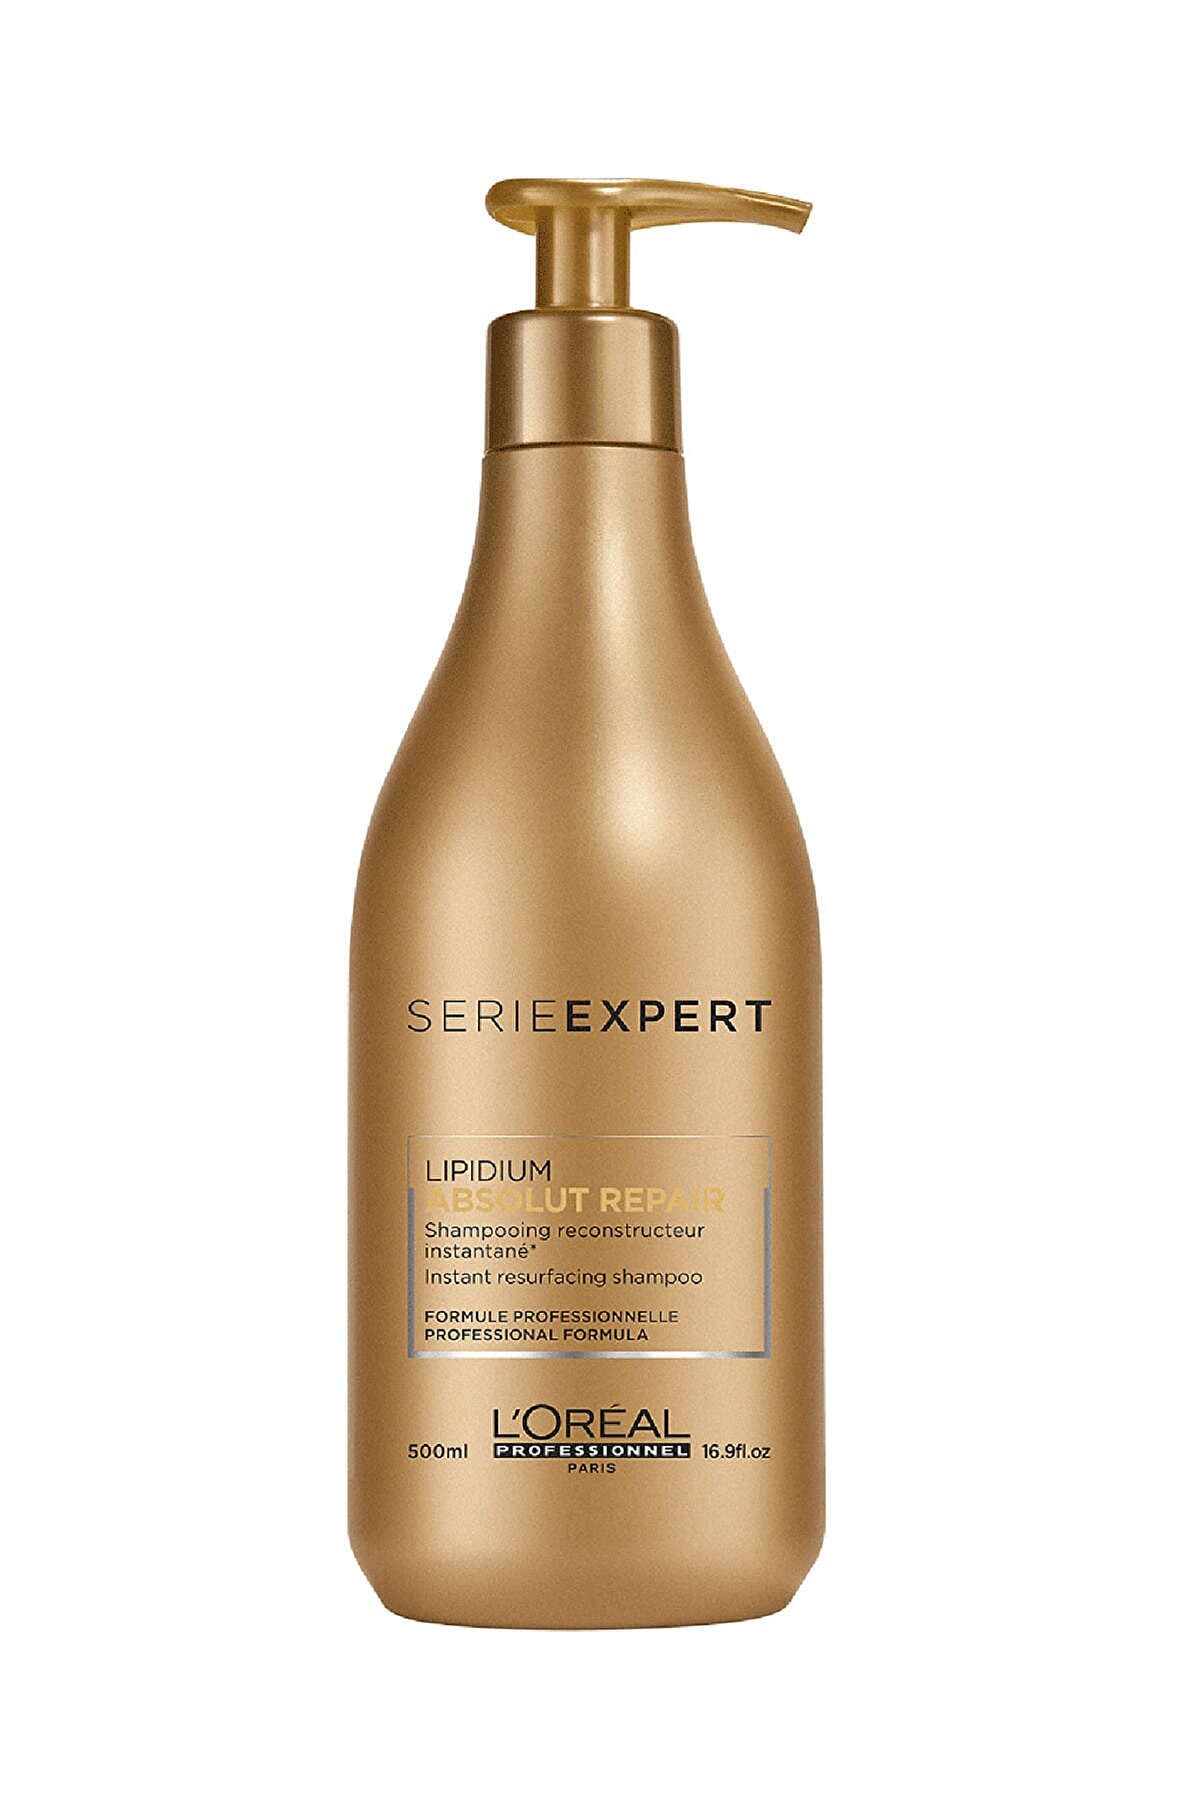 L'oreal Professionnel Absolut Repair Lipidium Yıpranmış Saçlar için Onarıcı Şampuan 500 ml 3474636481729